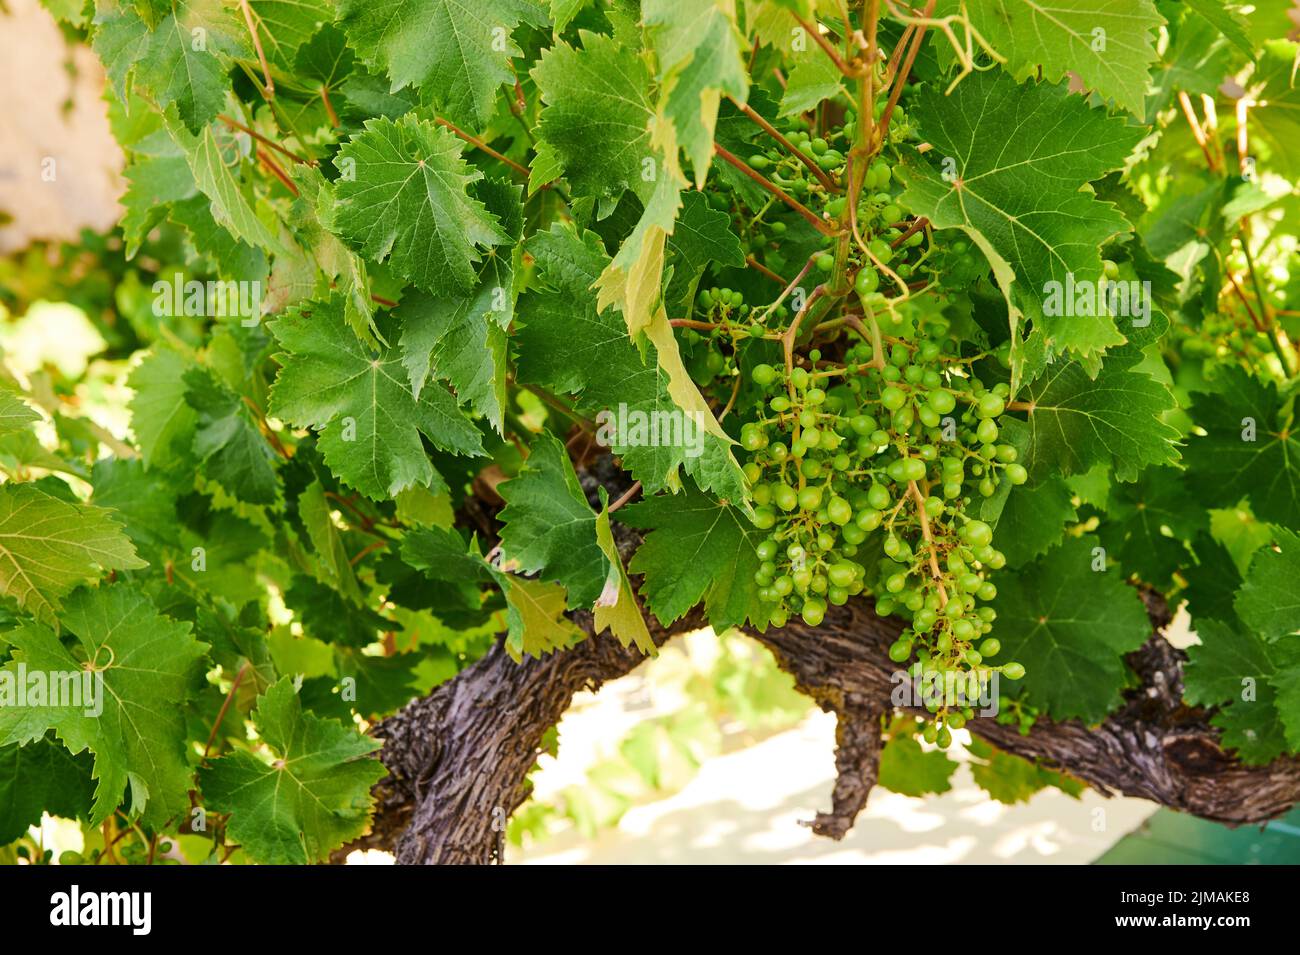 Hojas de uva verde y manojo de uvas verdes Foto de stock